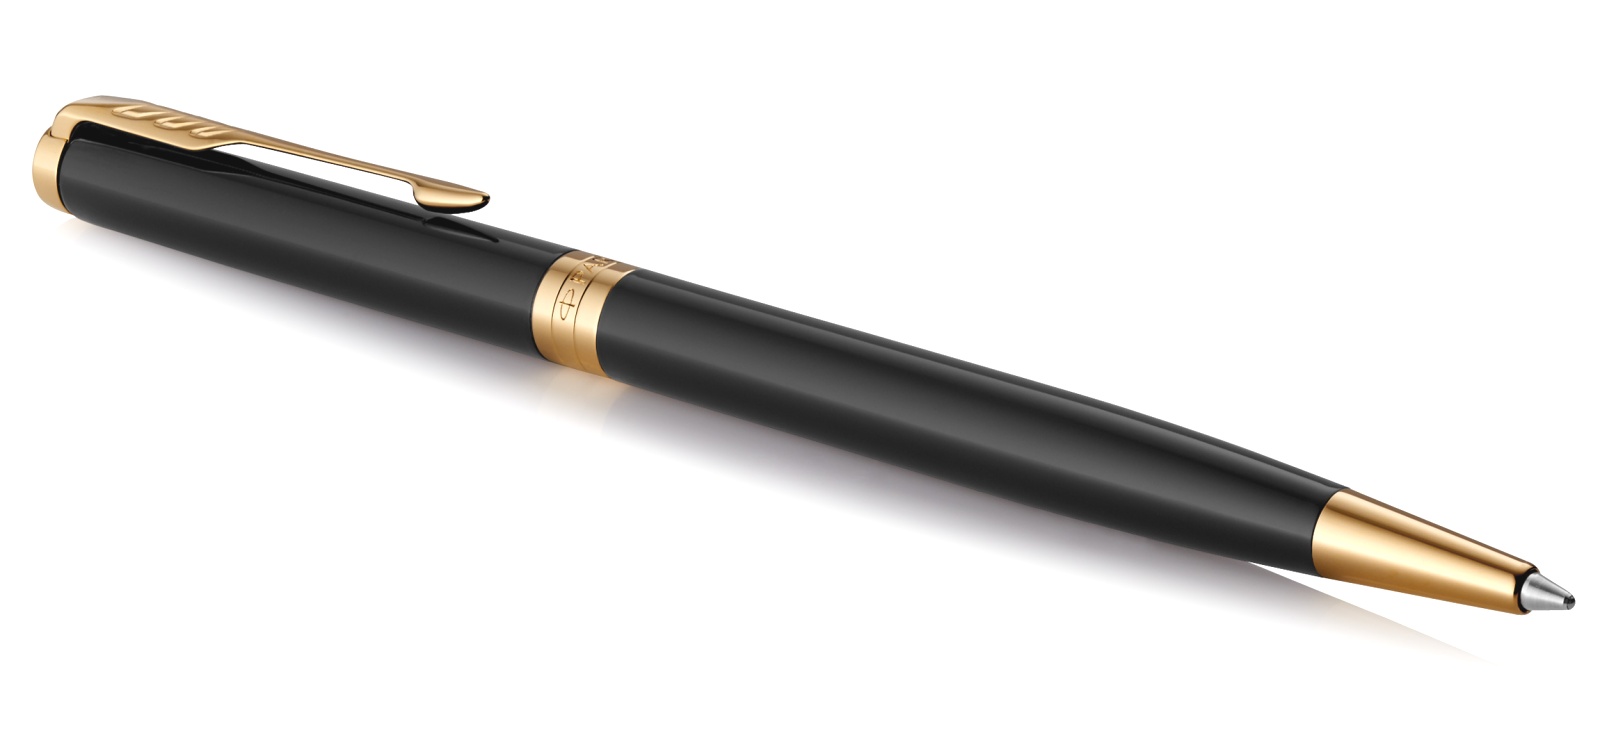  Шариковая ручка Parker Sonnet Slim Core K430, Lacquer Deep Black GT, фото 2